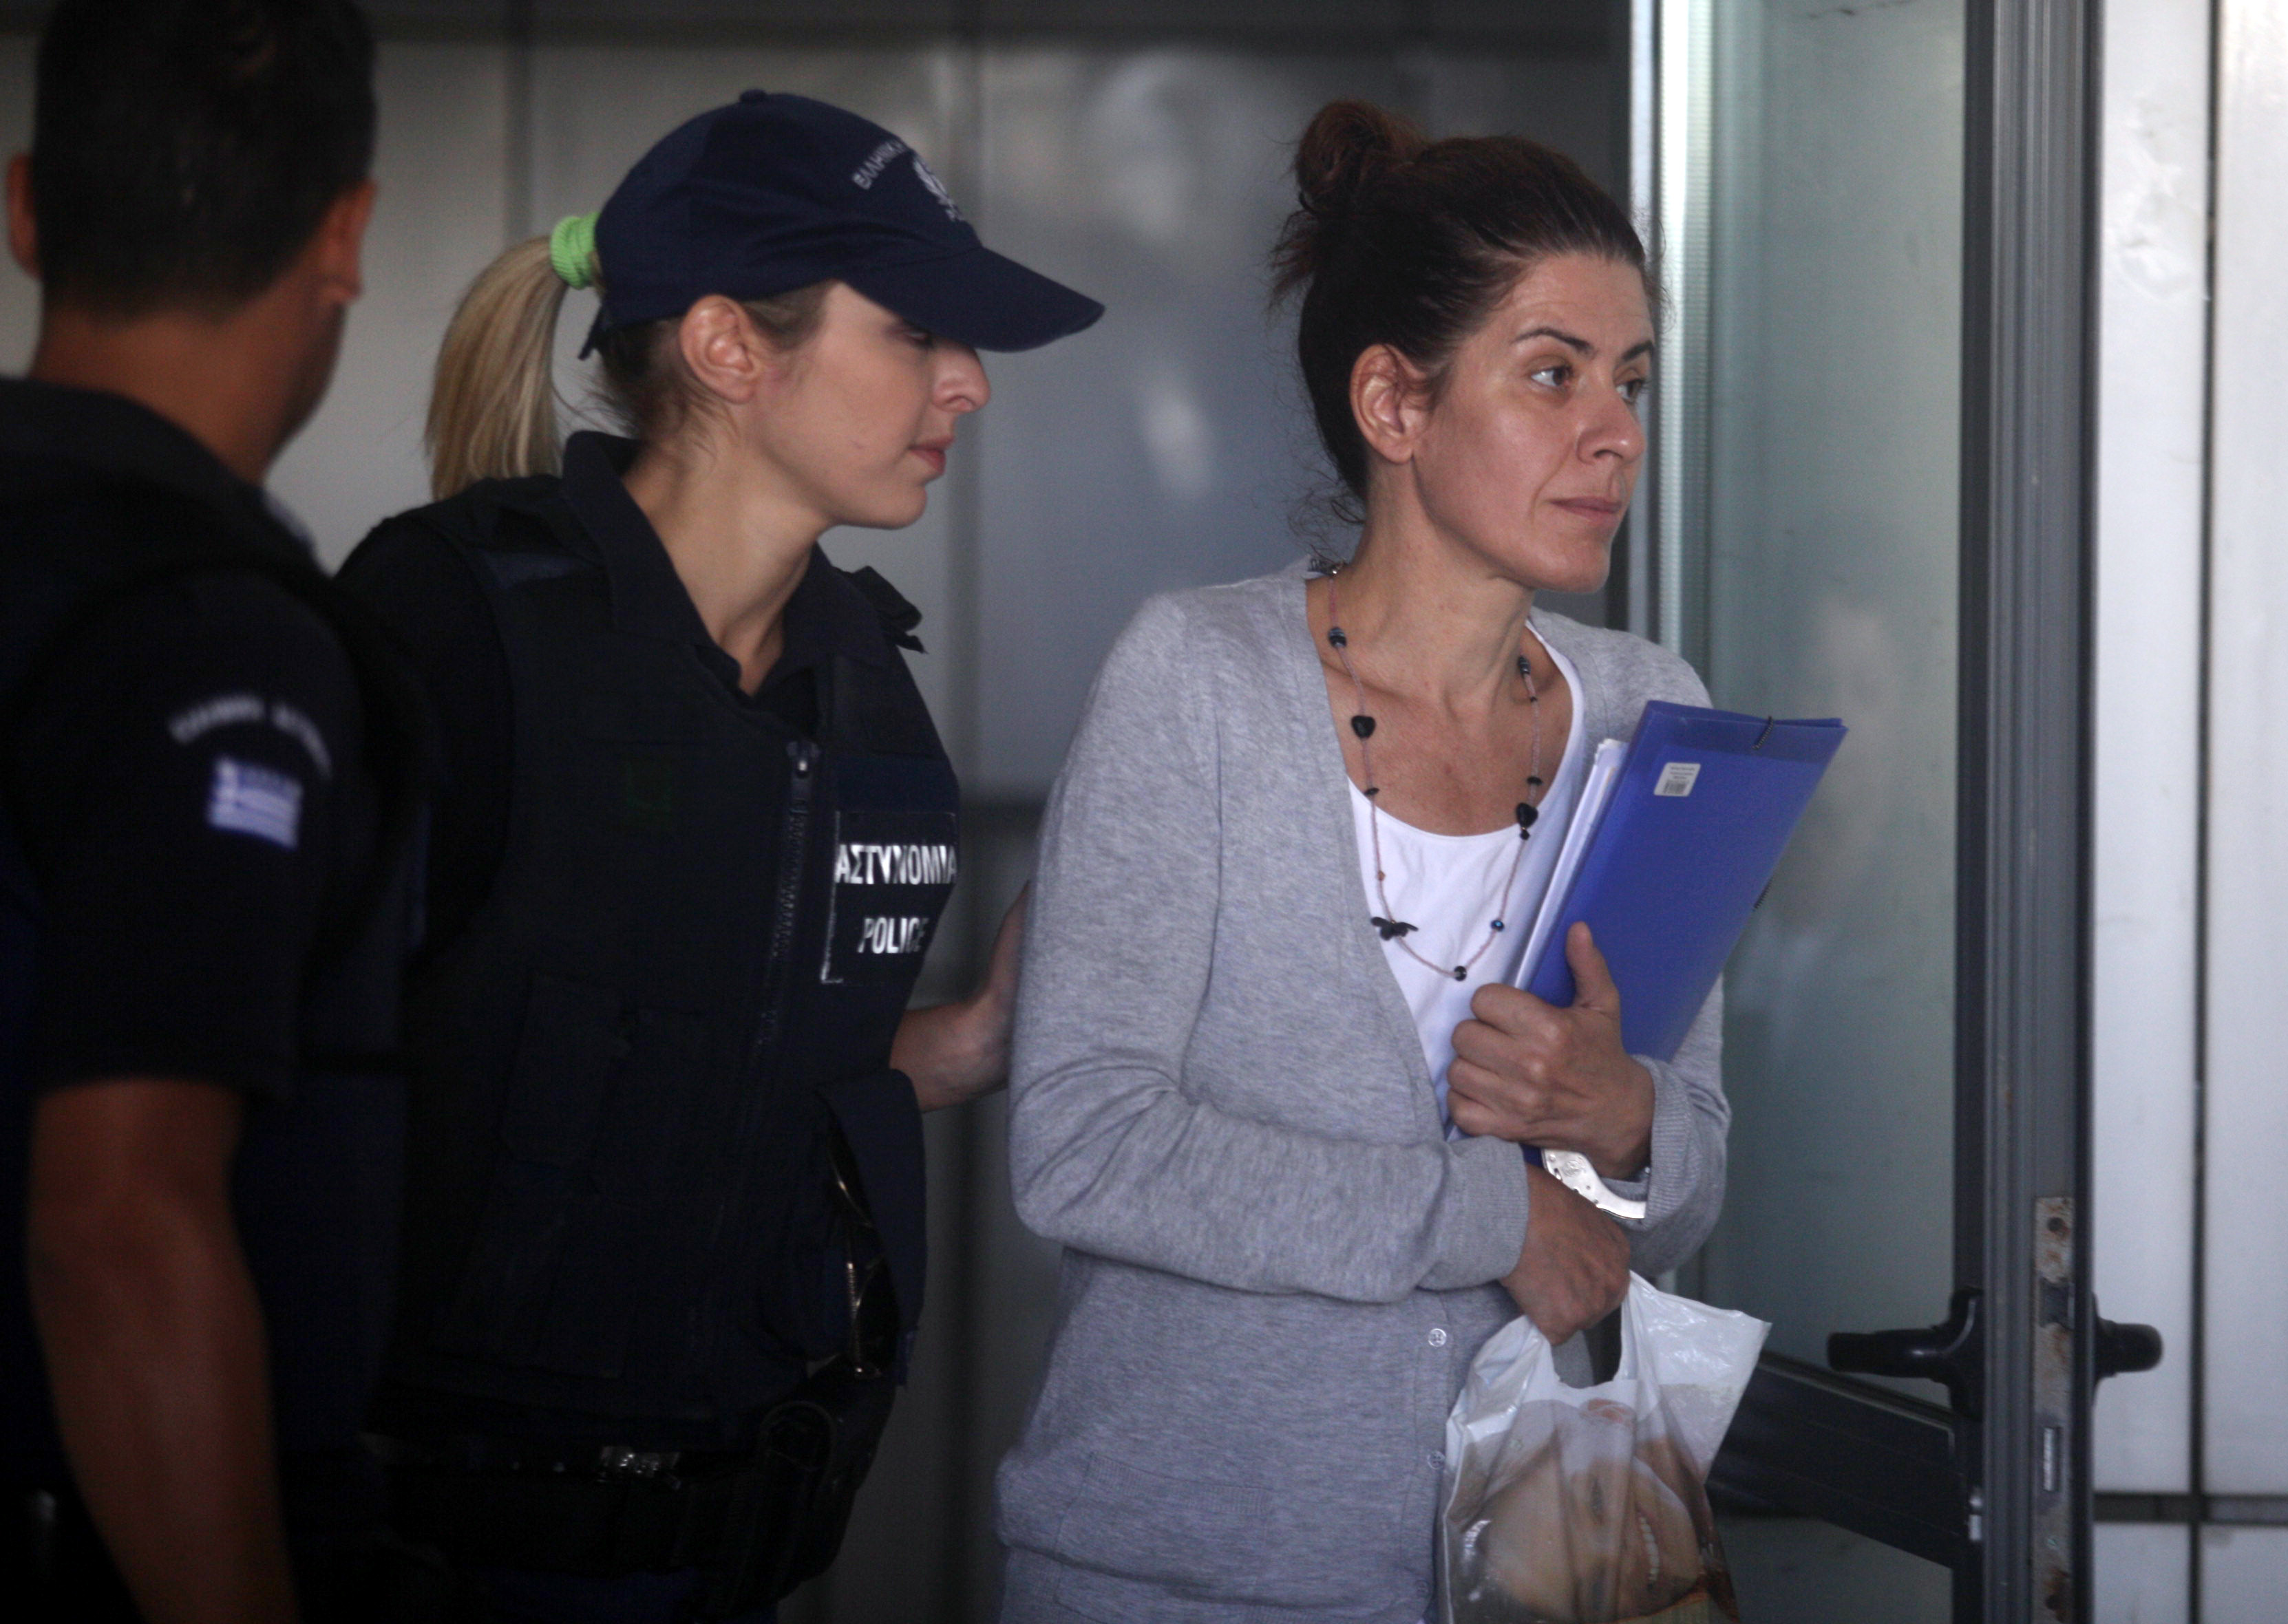 Αποφυλακίζεται η Αρετή Τσοχατζοπούλου – Την αγκάλιασε και τη φίλησε ο Άκης – Λιποθύμησε η Βίκυ Σταμάτη όταν έμαθε ότι παραμένει κρατούμενη